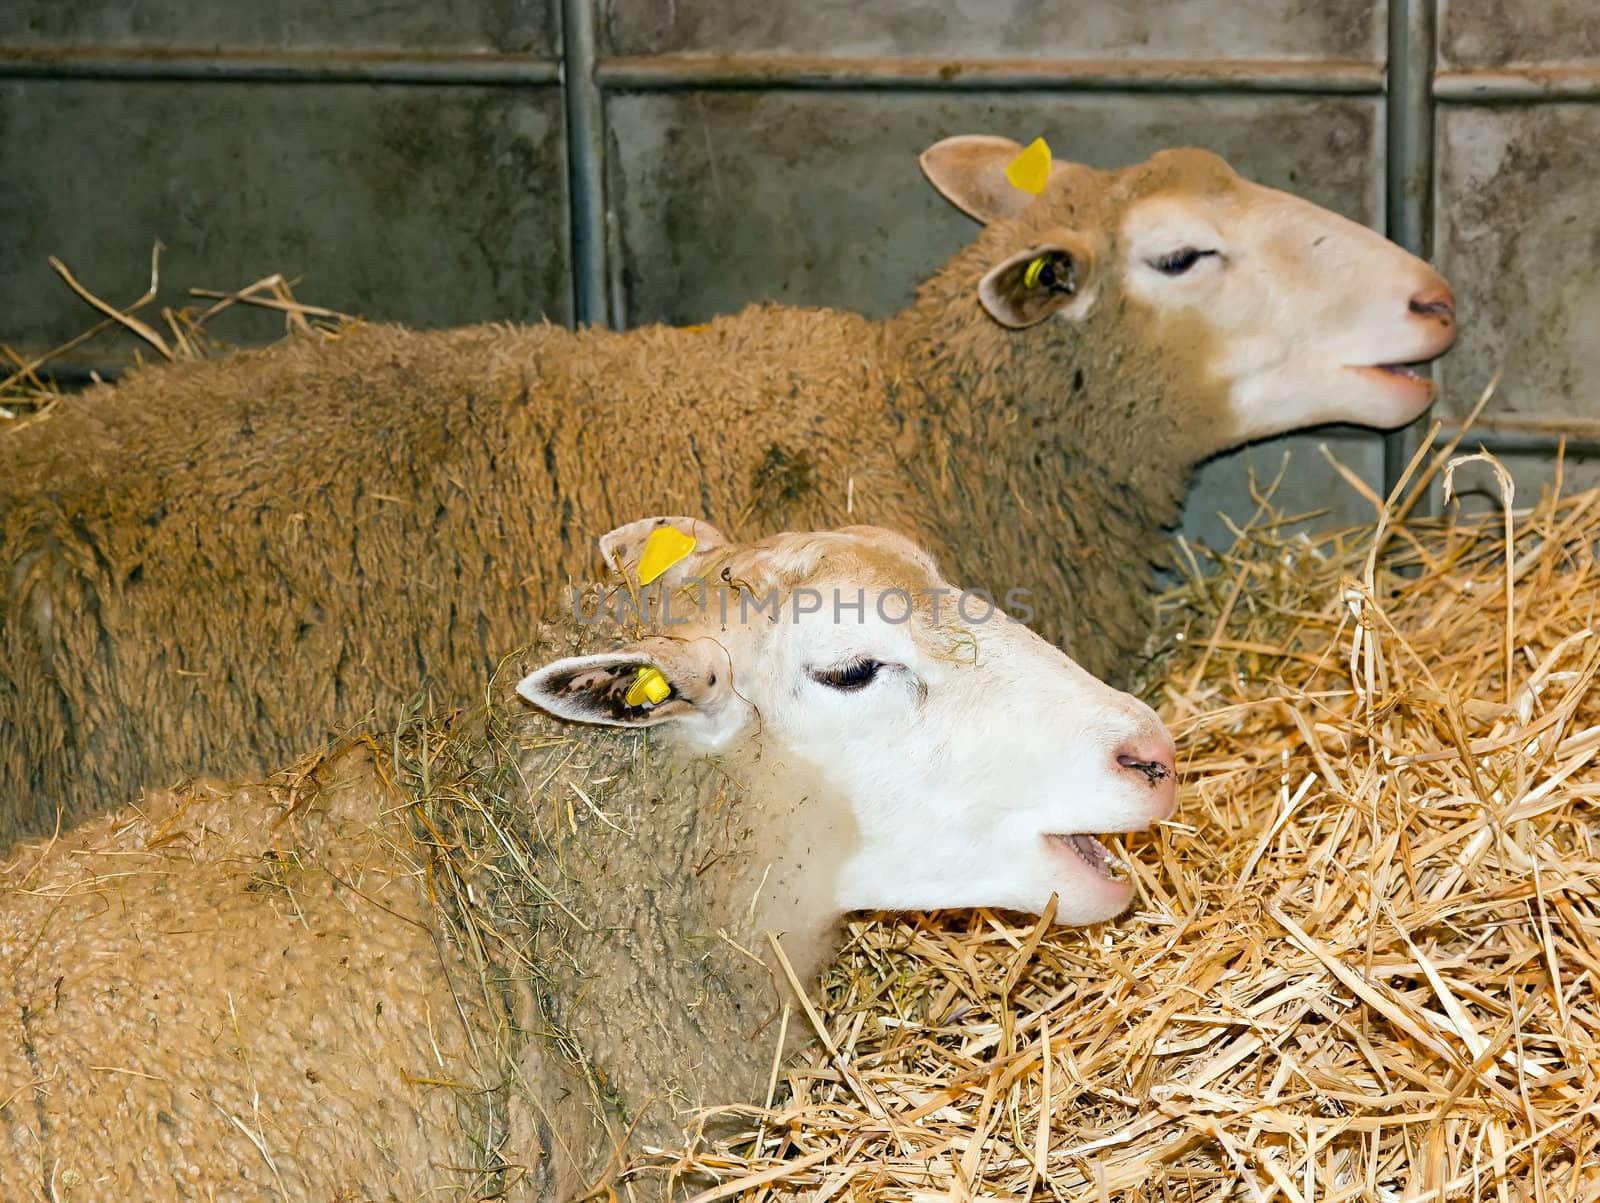 the choir of sheep, at an agricultural fair